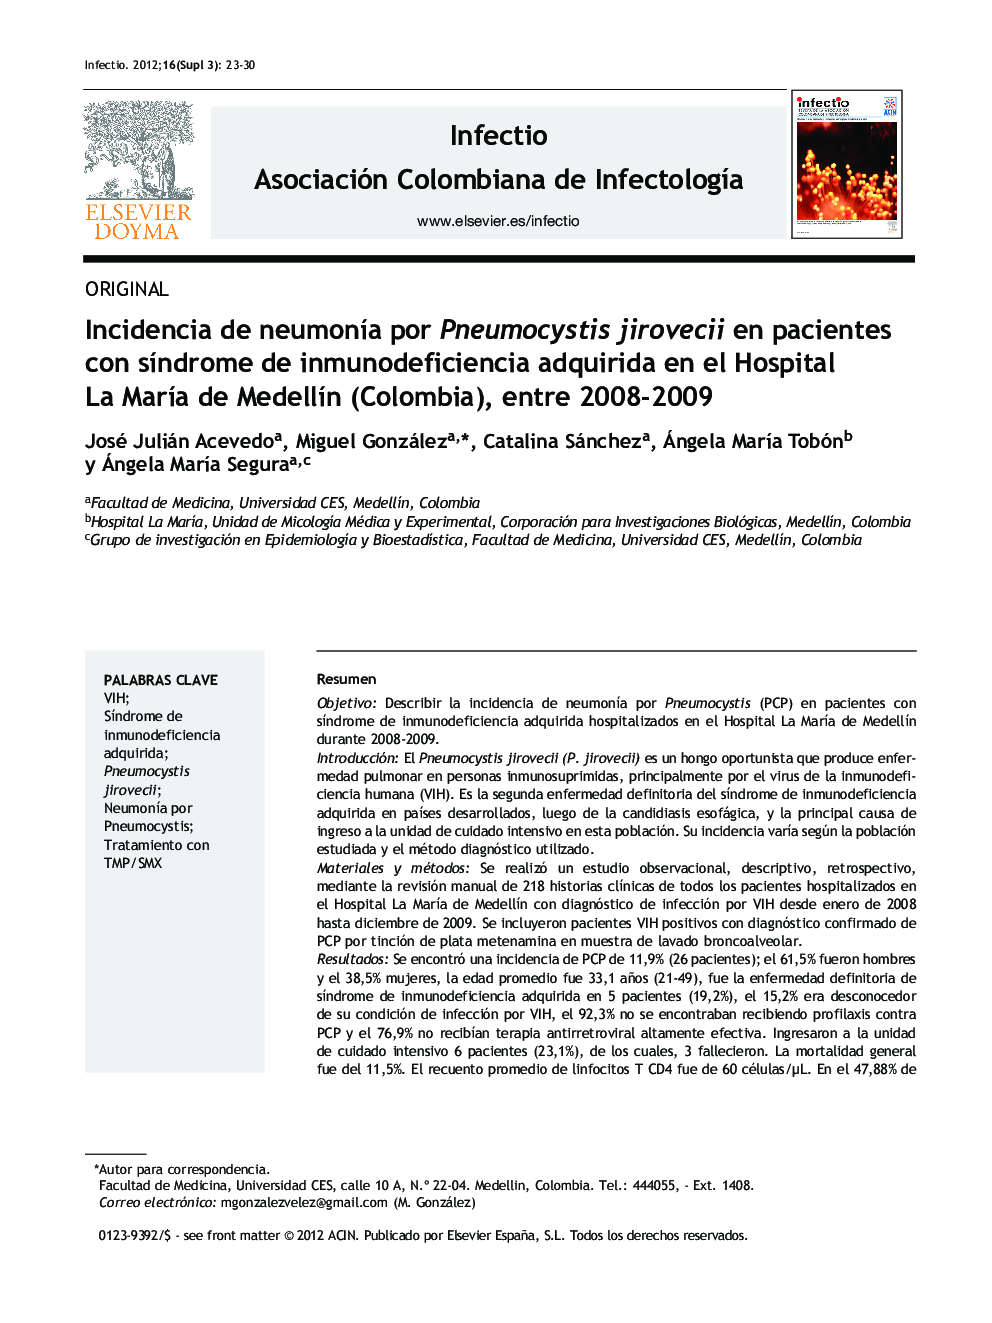 Incidencia de neumonía por Pneumocystis jirovecii en pacientes con síndrome de inmunodeficiencia adquirida en el Hospital La María de Medellín (Colombia), entre 2008–2009